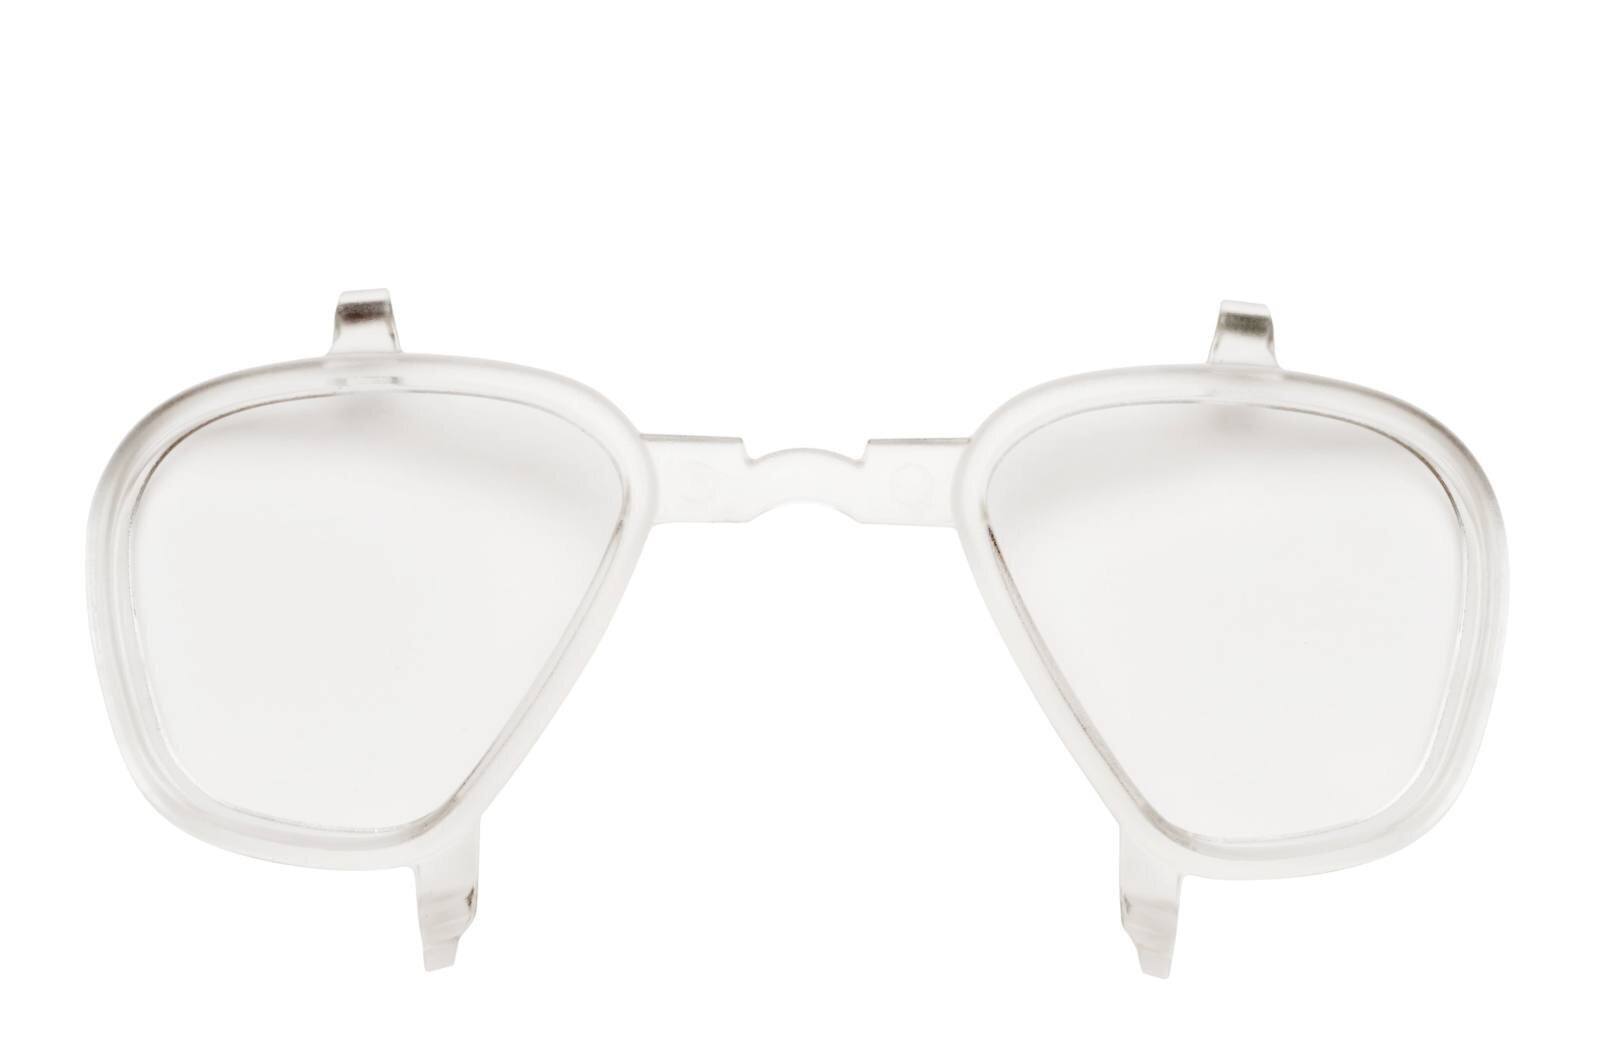 inserto da vista 3M per occhiali GoggleGear 500, Scotchgard Anti-Fog, UV, full vision GG500KI / GG500PI-EU